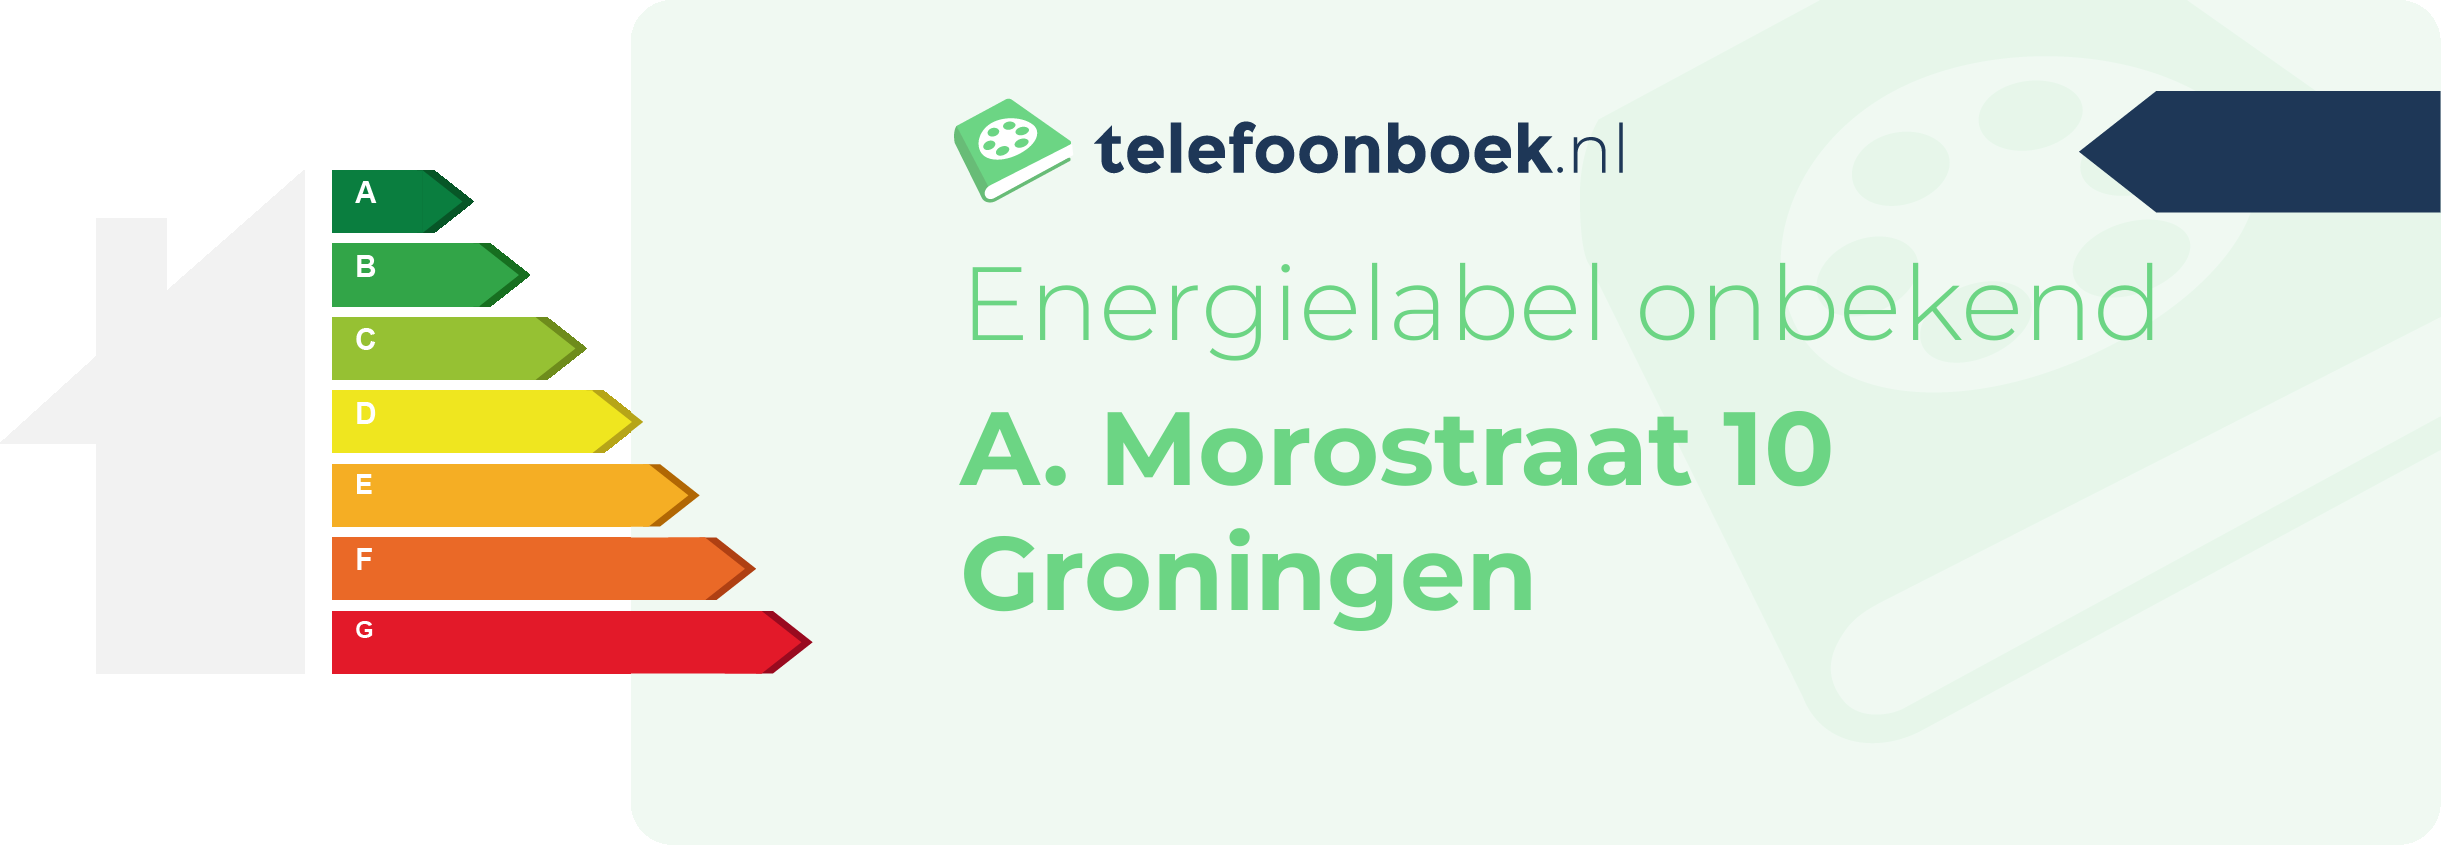 Energielabel A. Morostraat 10 Groningen